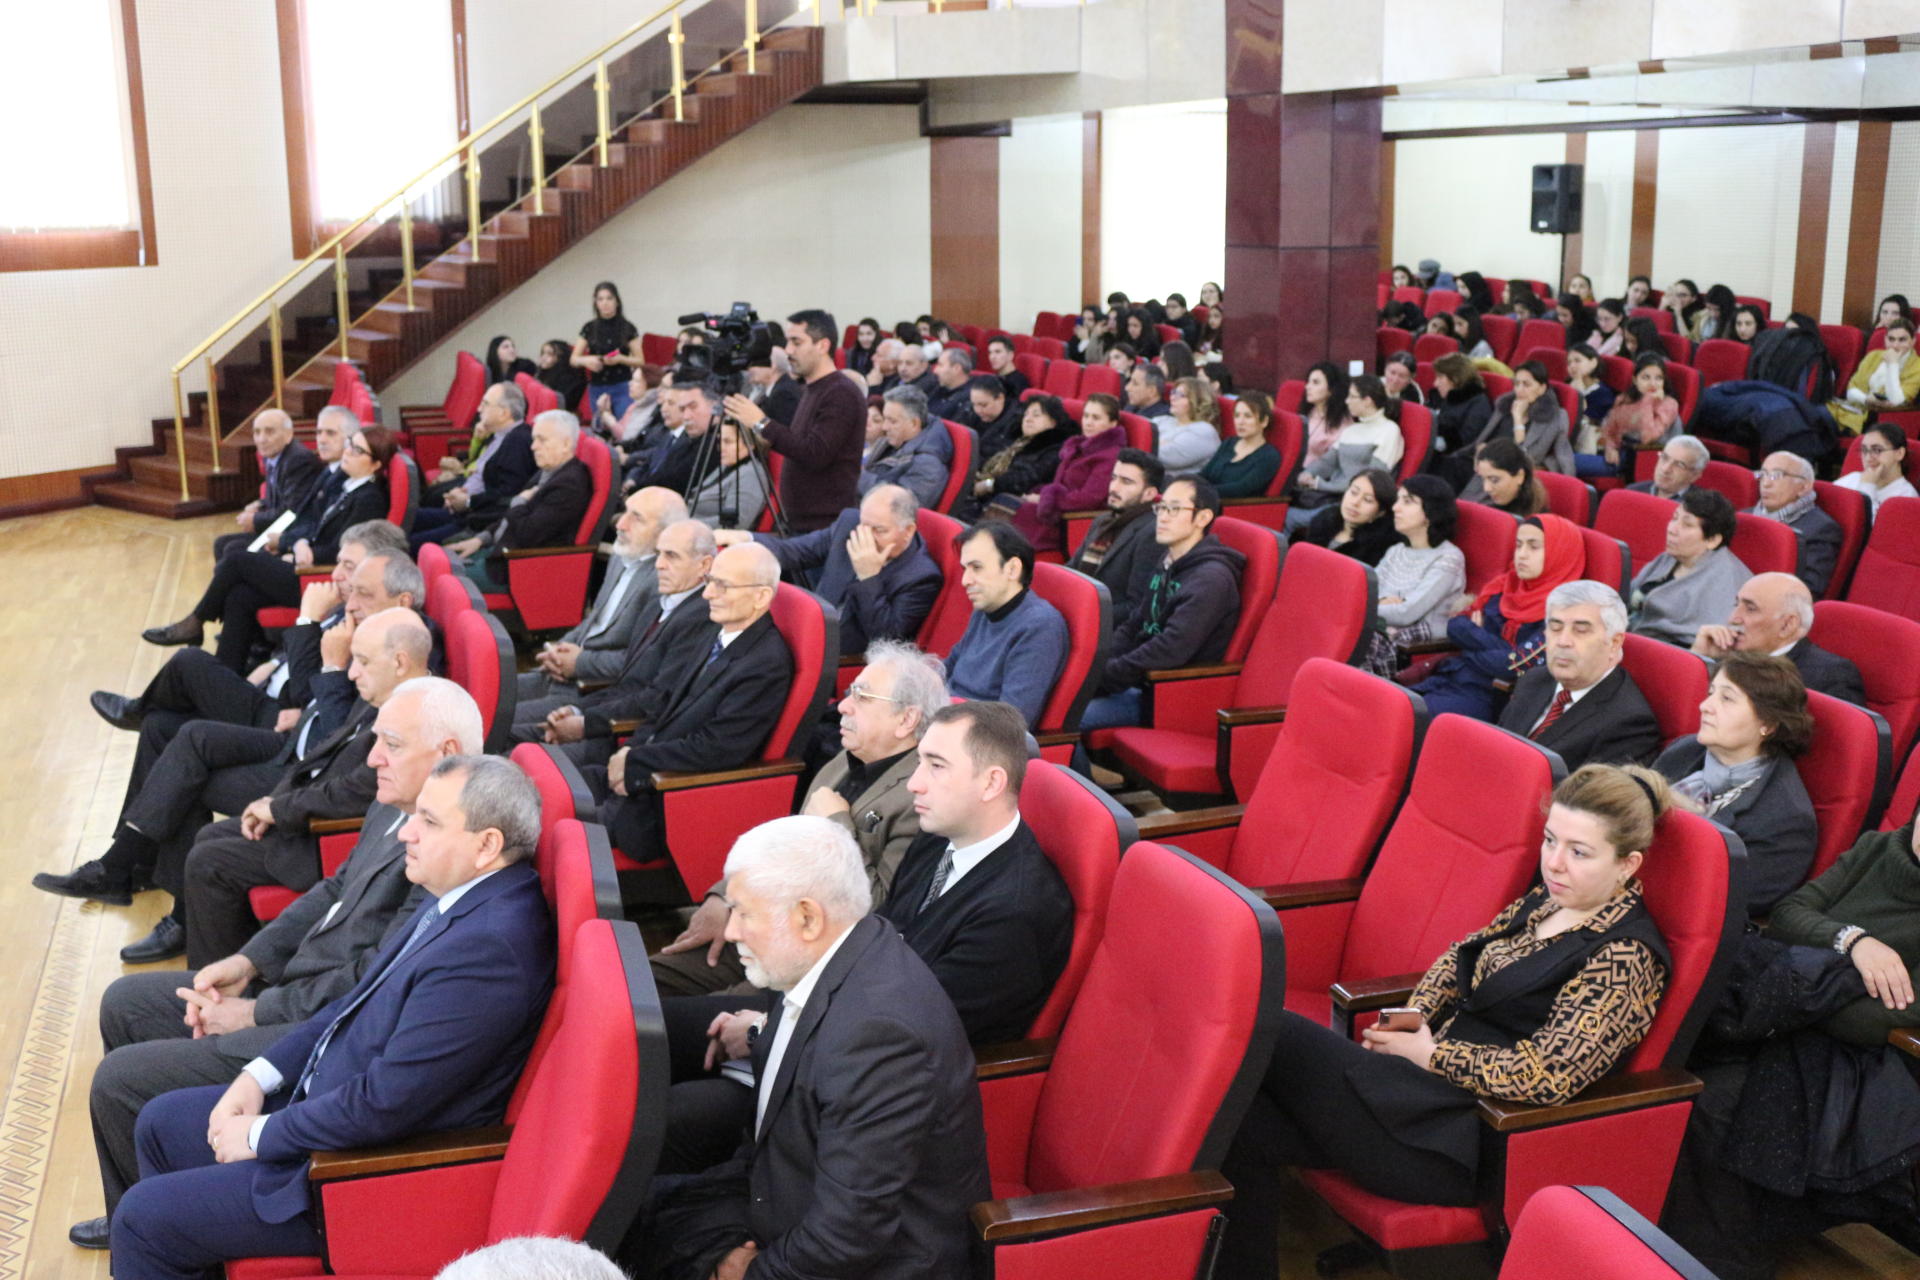 В БГУ физики Азербайджана и Японии провели семинар (ФОТО)